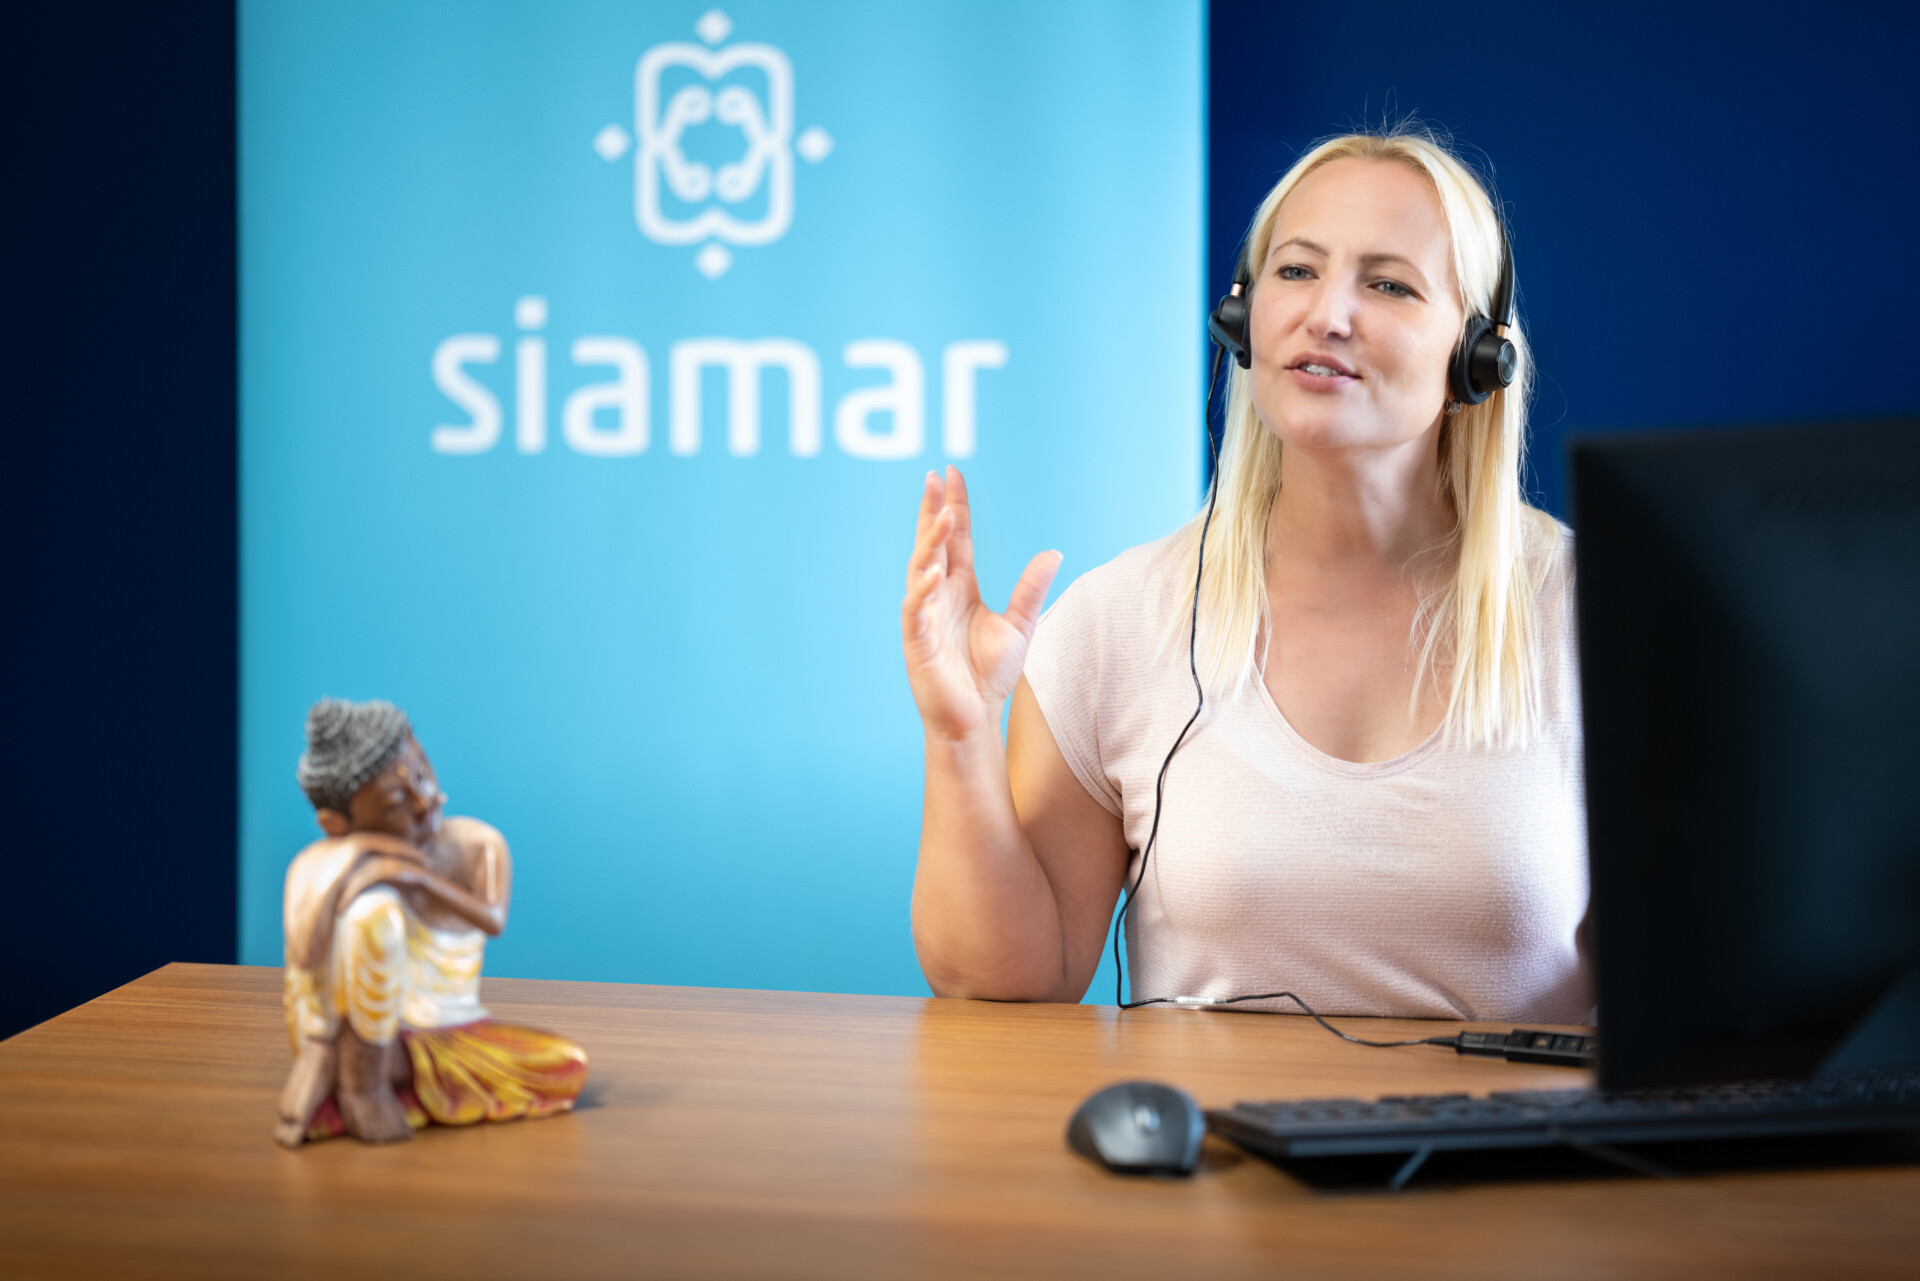 Eine blonde Frau mit Headset sitzt an einem Schreibtisch und gestikuliert während eines Gesprächs, vermutlich in einem Call-Center. Vor ihr steht eine kleine, farbenfrohe Figur. Im Hintergrund ist ein Banner mit dem Logo "siamar" zu sehen.